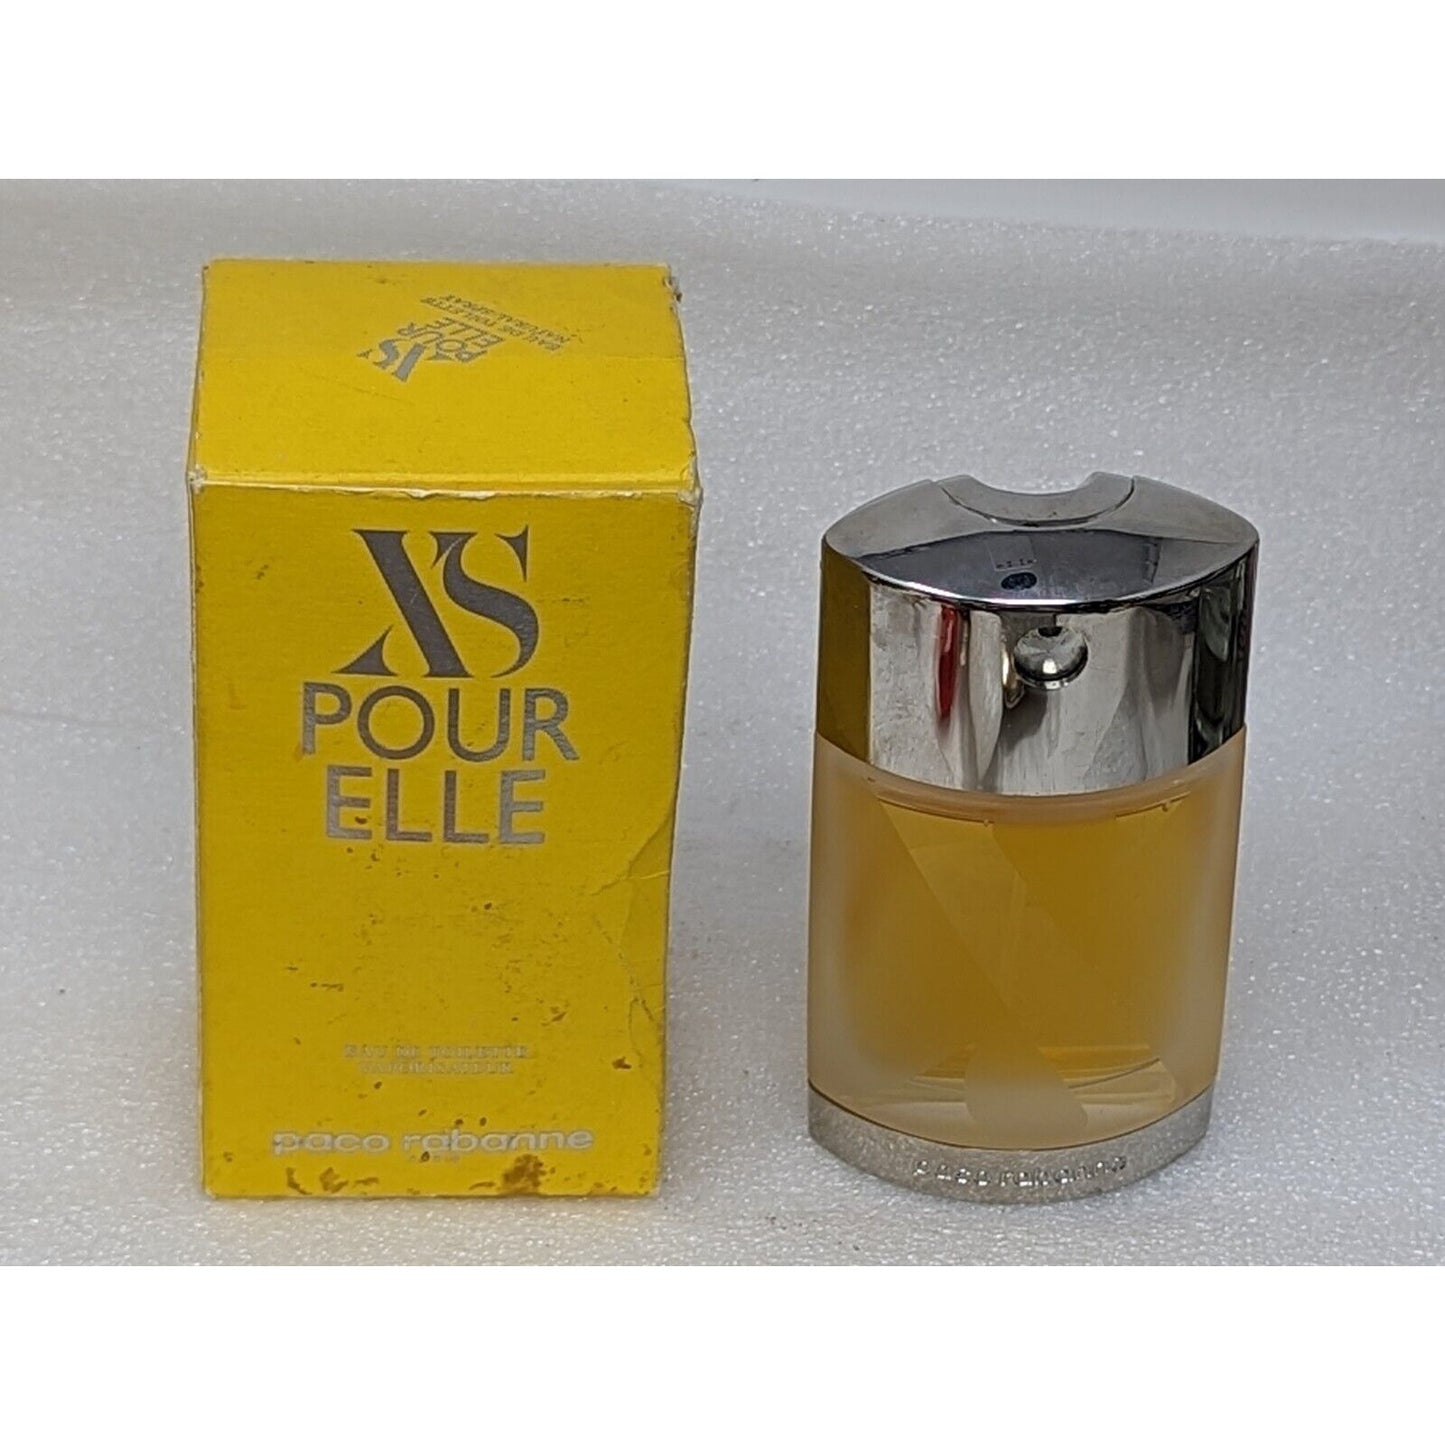 XS Pour Elle by Paco Rabanne Eau de Toilette Perfume Spray for Women 1.7 oz